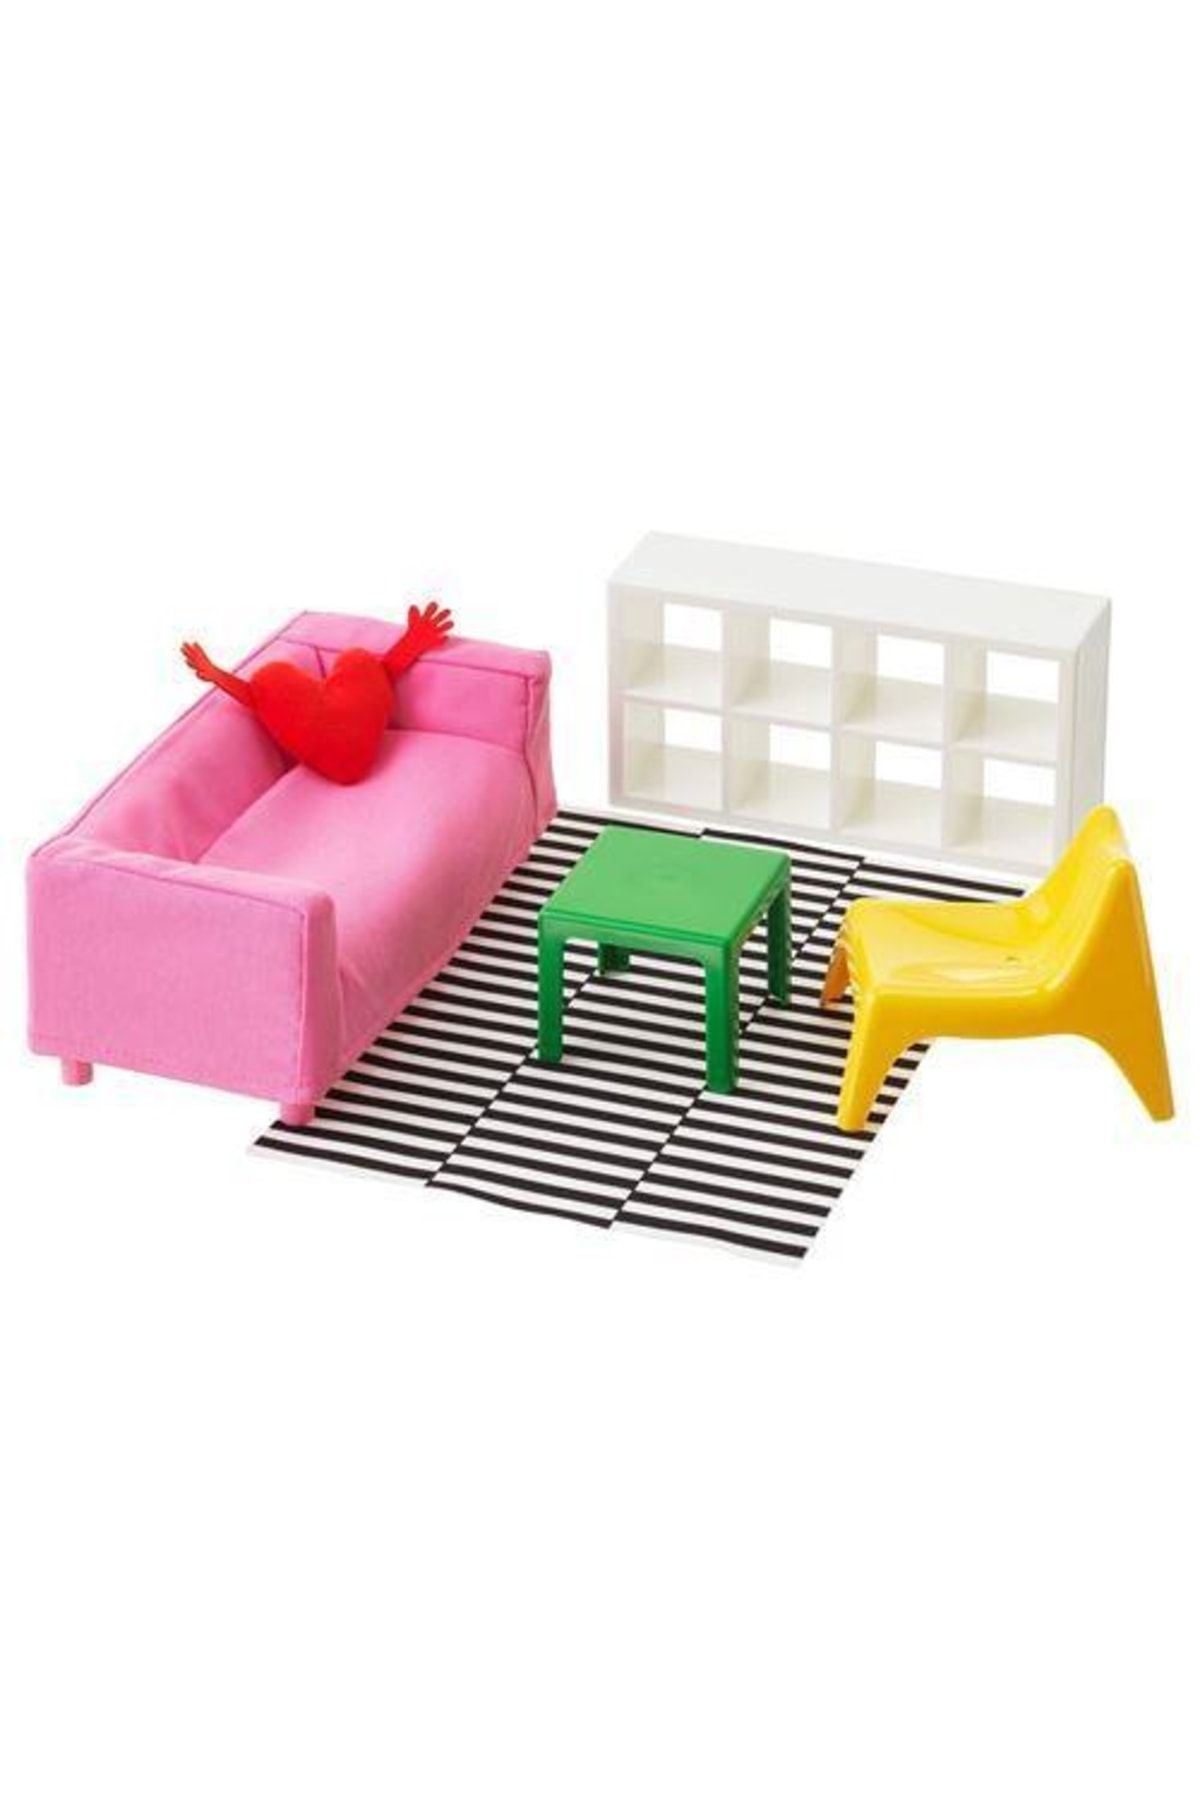 IKEA Çocuk Aktivite Oyuncağı Renkli Salon Takımı Meridyendukkan Salon Mobilya Oyuncak Takımı